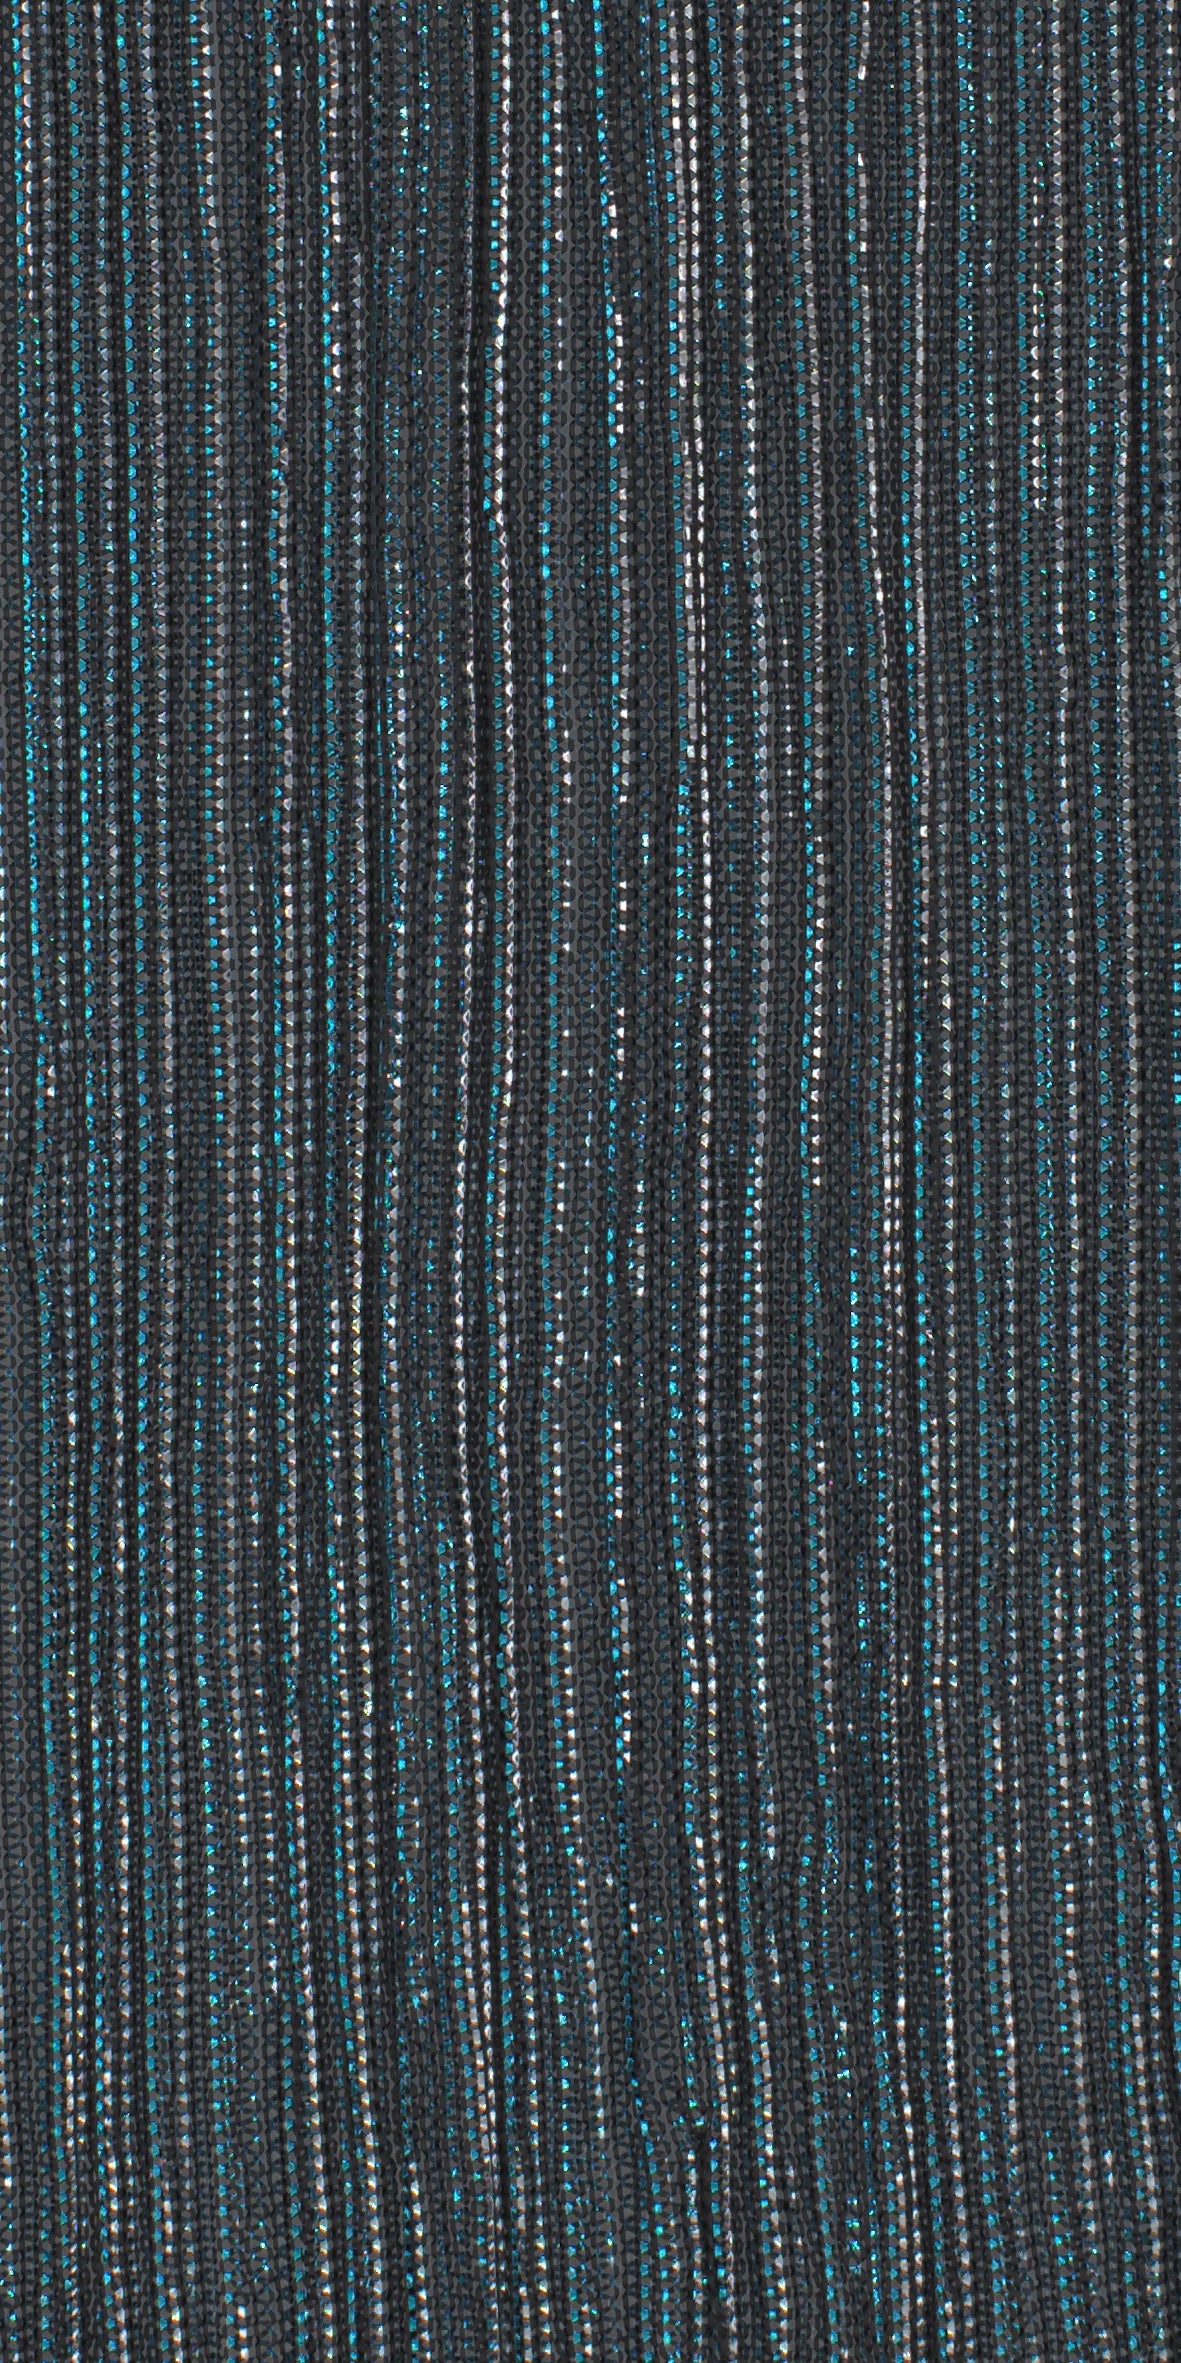 12006-10 Light Blue Silver Black Metallic Pleat Plain Dyed Blend 126g/yd 56&quot; black blend blue knit metallic plain dyed pleat ppl new silver Metallic, Pleat - knit fabric - woven fabric - fabric company - fabric wholesale - fabric b2b - fabric factory - high quality fabric - hong kong fabric - fabric hk - acetate fabric - cotton fabric - linen fabric - metallic fabric - nylon fabric - polyester fabric - spandex fabric - chun wing hing - cwh hk - fabric worldwide ship - 針織布 - 梳織布 - 布料公司- 布料批發 - 香港布料 - 秦榮興